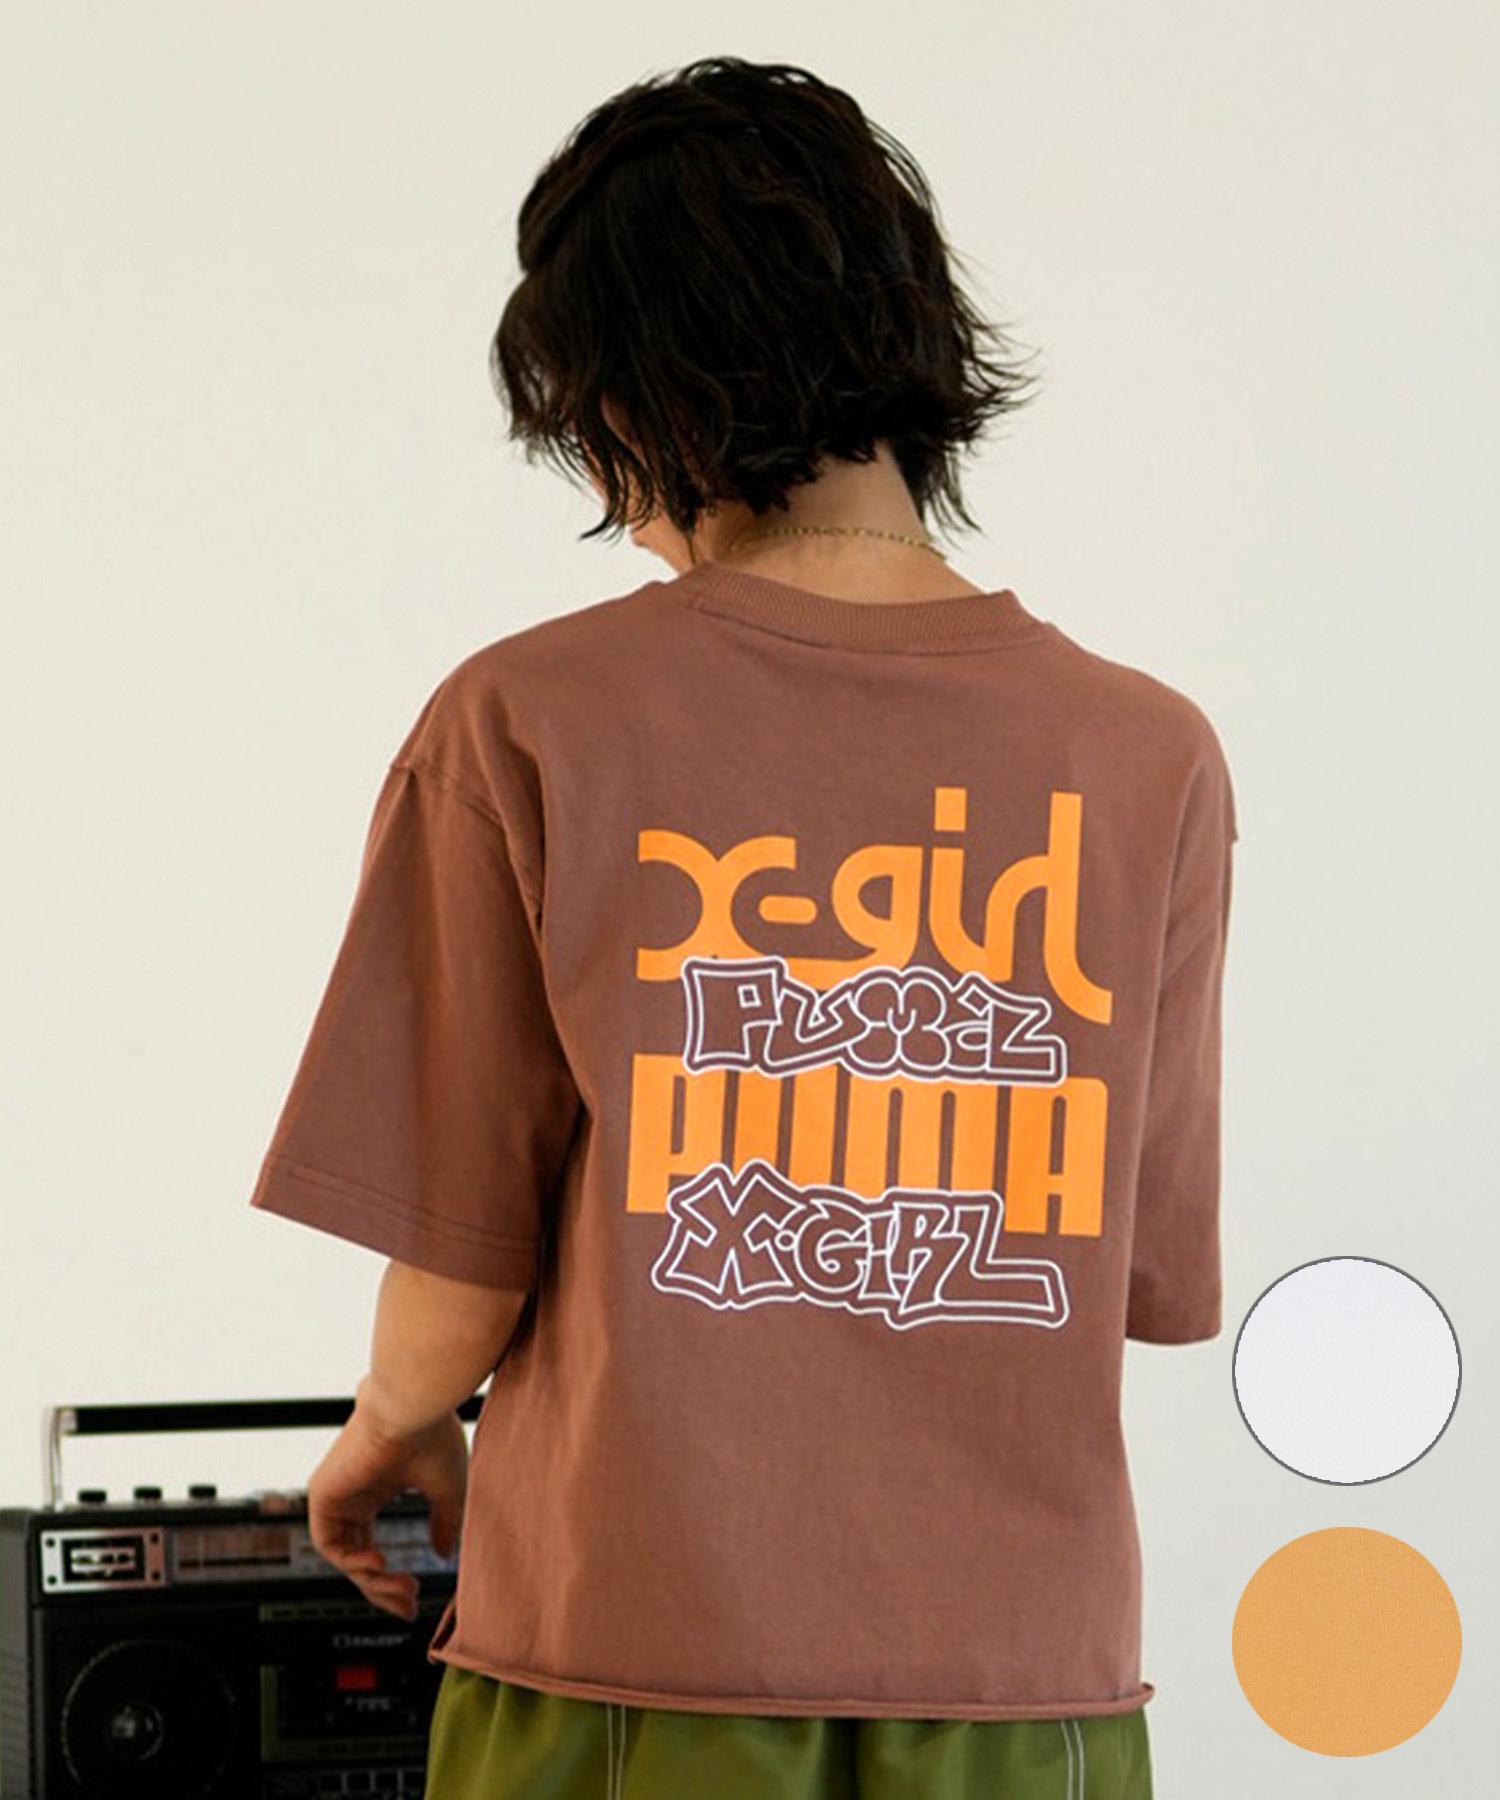 PUMA プーマ × X-GIRL エックスガール コラボ ウィメンズ グラフィック 半袖 Tシャツ レディース 624723(82-S)